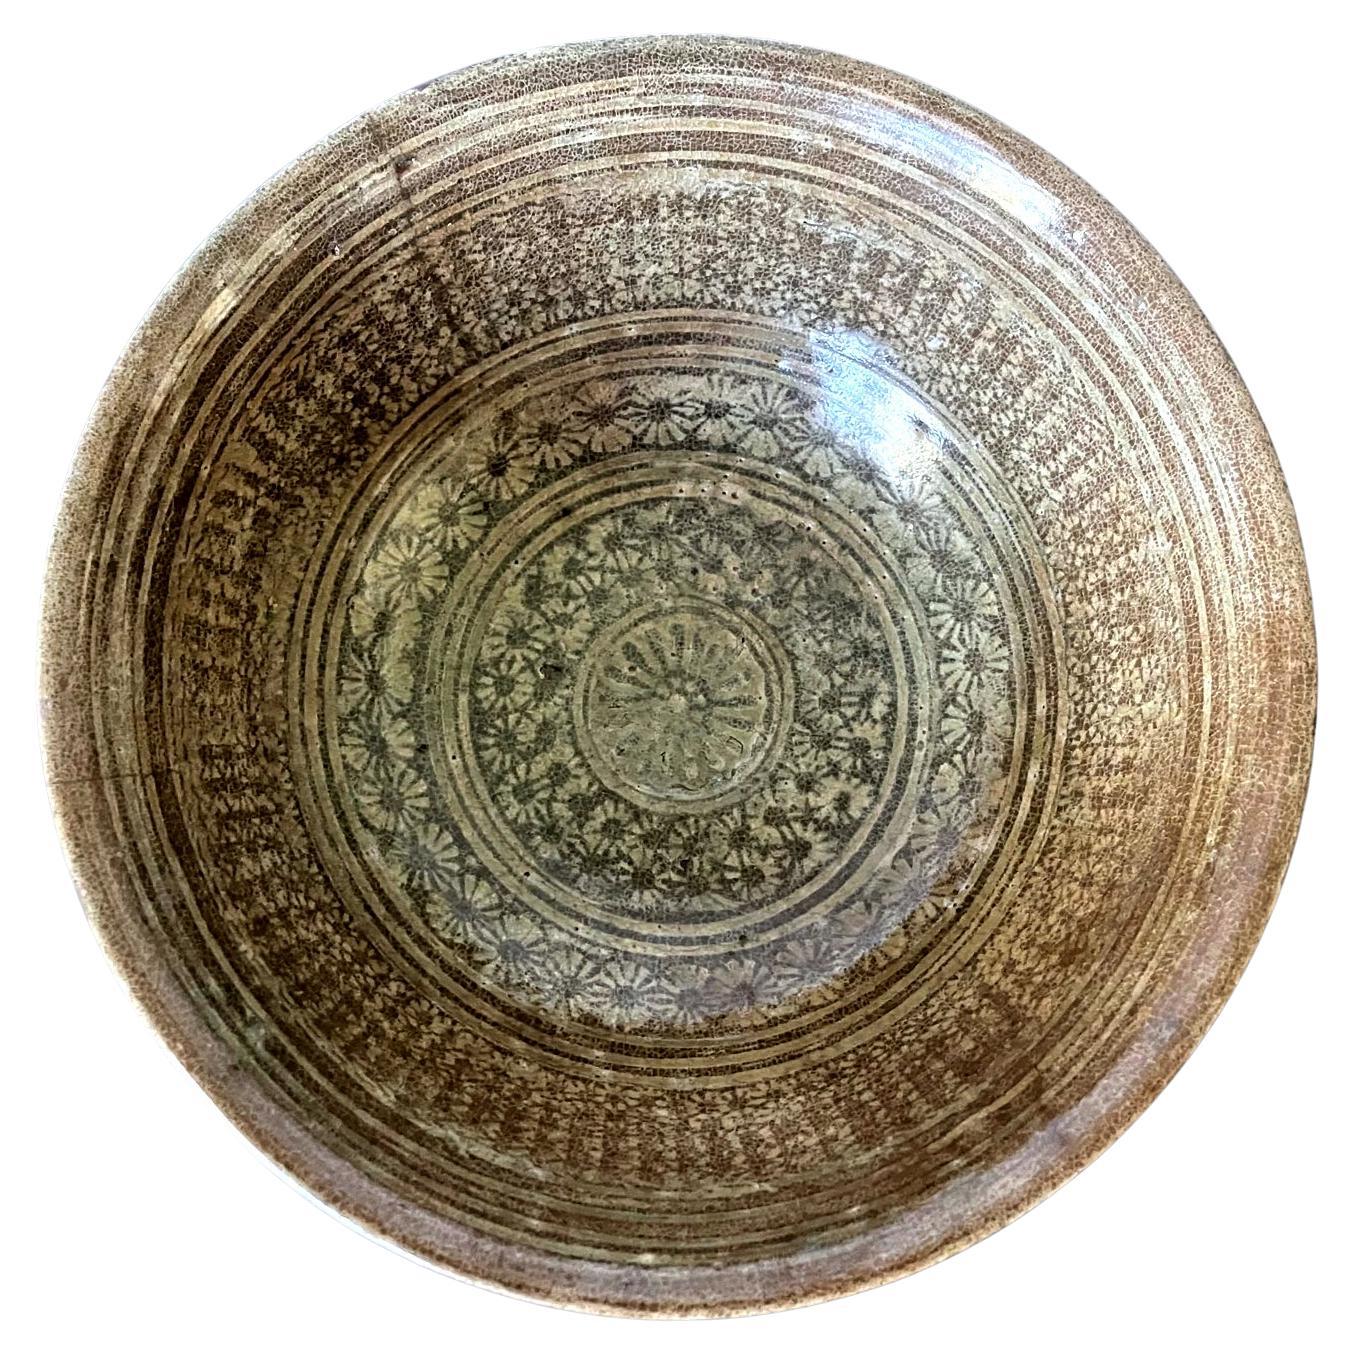 Antique Bol Buncheong en céramique coréenne Dynastie Joseon